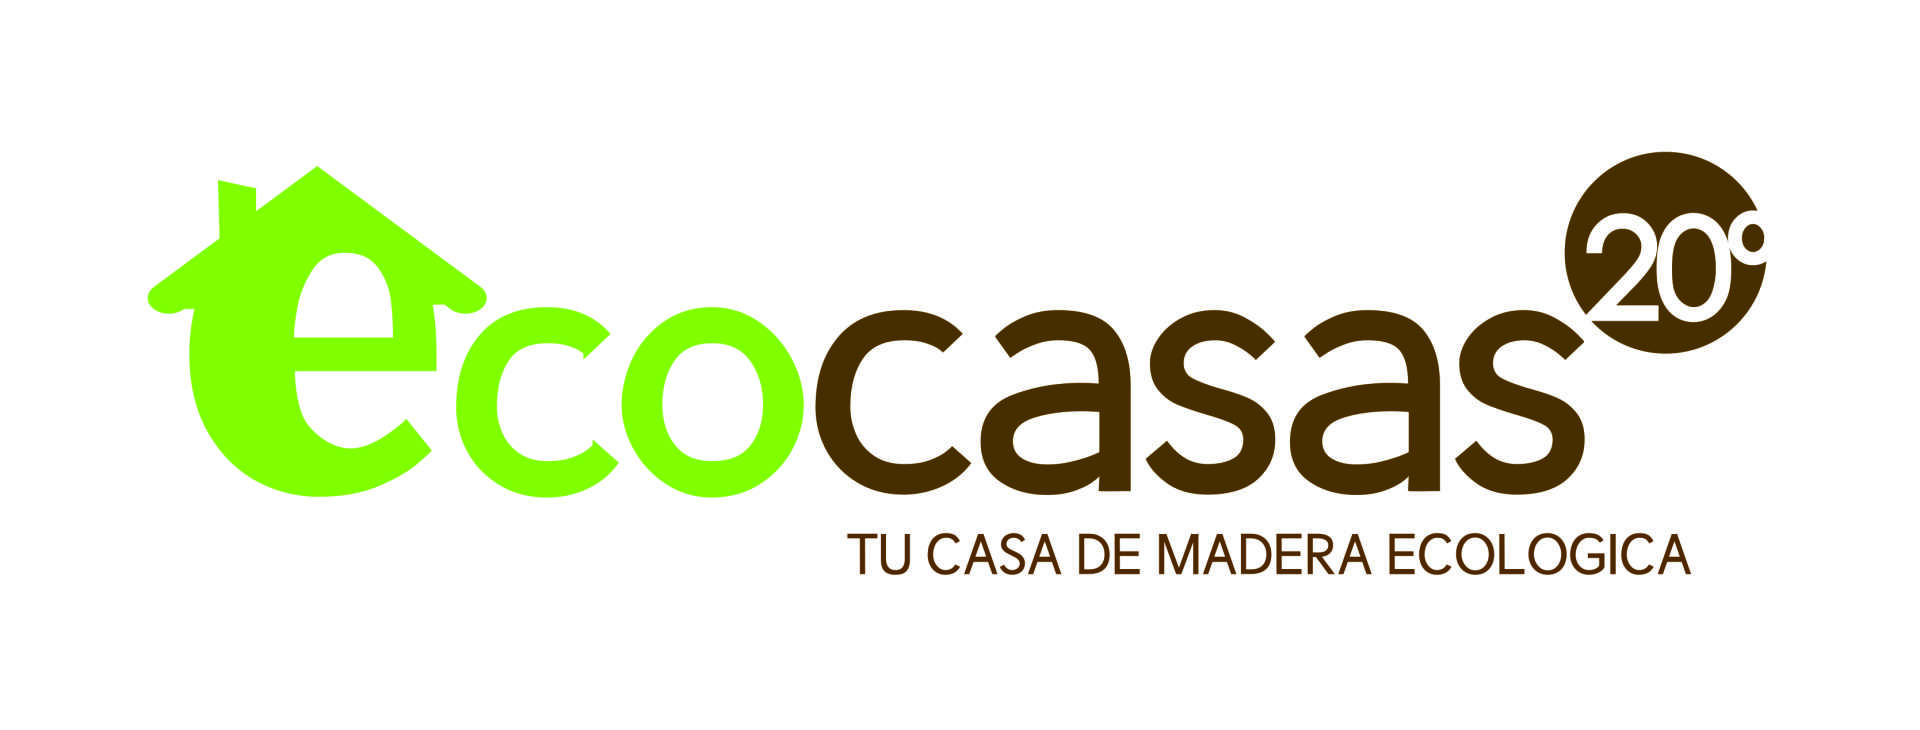 EcoCasas